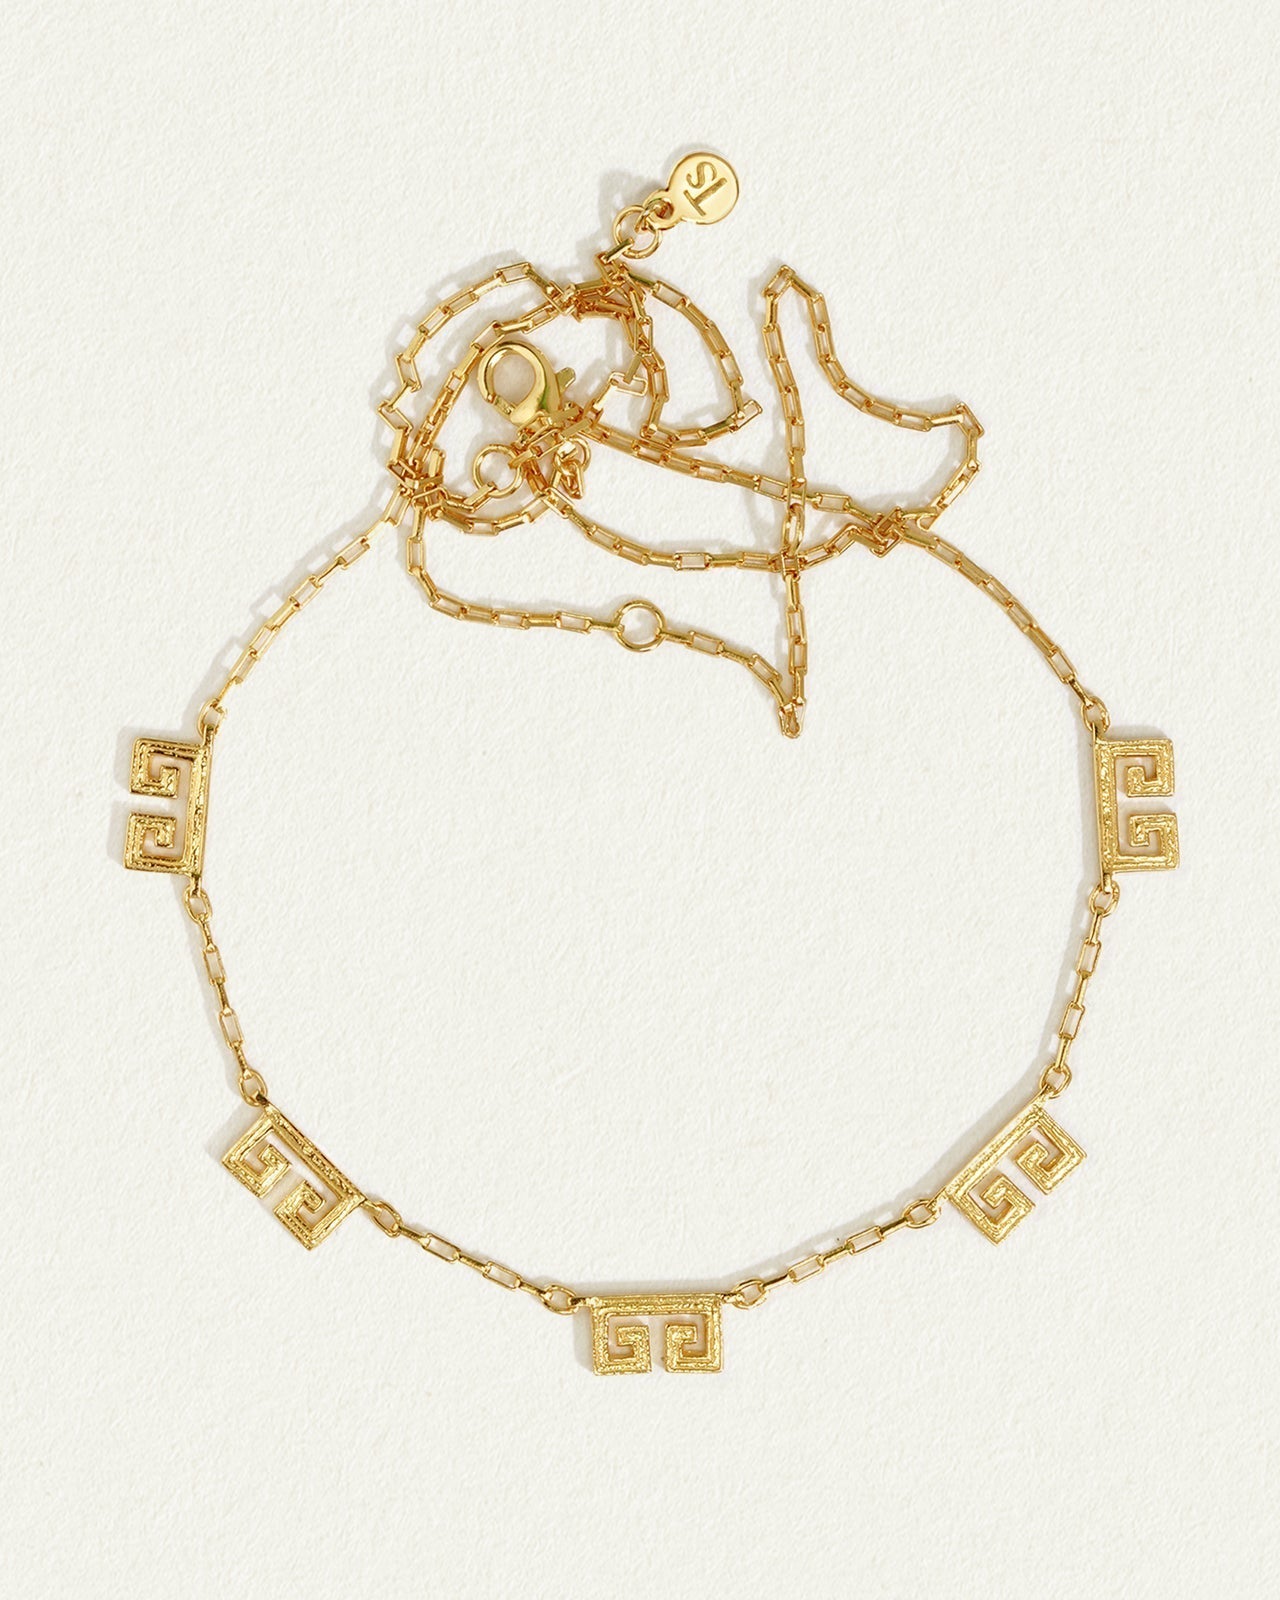 Gold Greek key pattern necklace Versace - IetpShops HK